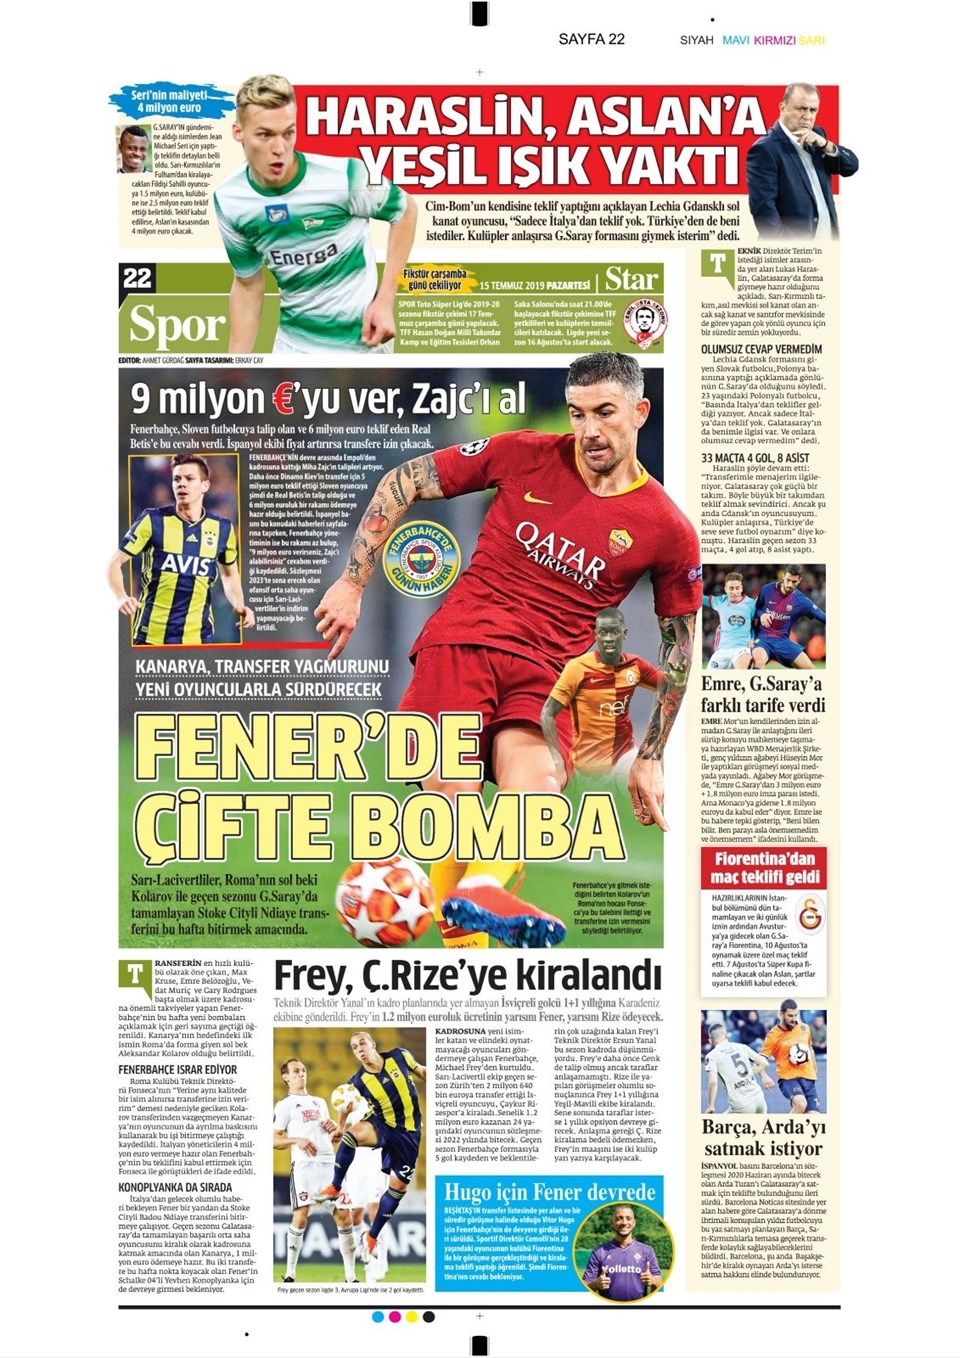 Günün spor manşetleri (15 Temmuz 2019)  "Fener'e Gustavo, Asla 1